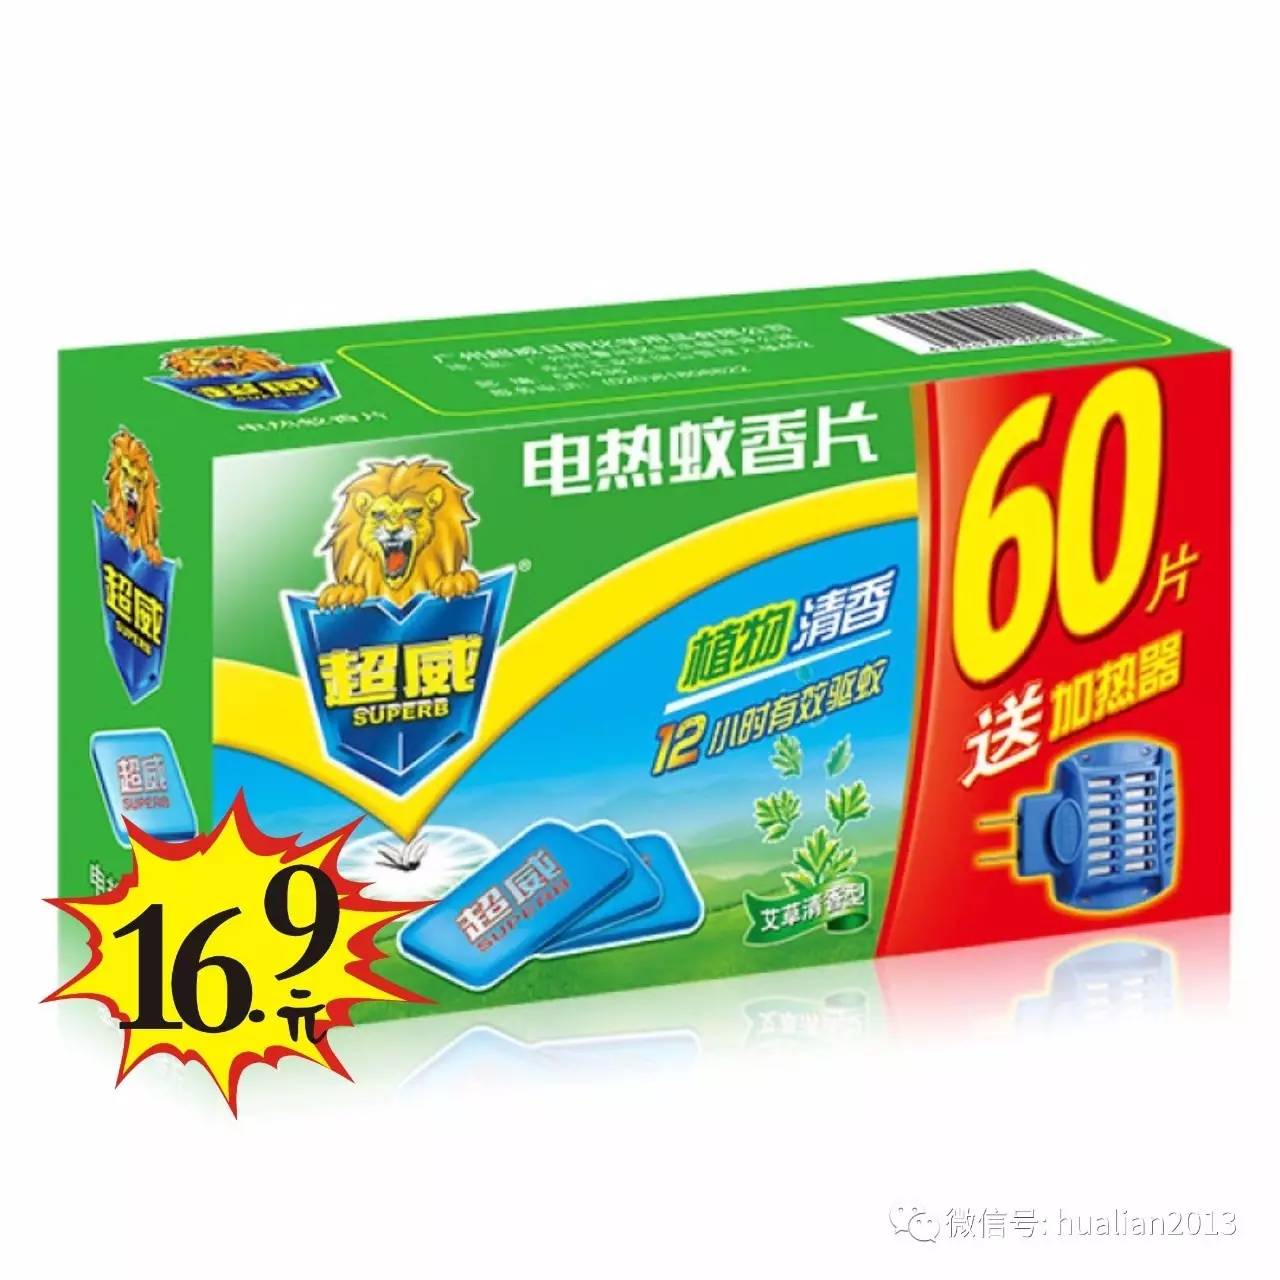 超威电热蚊香片 16.9元 sale